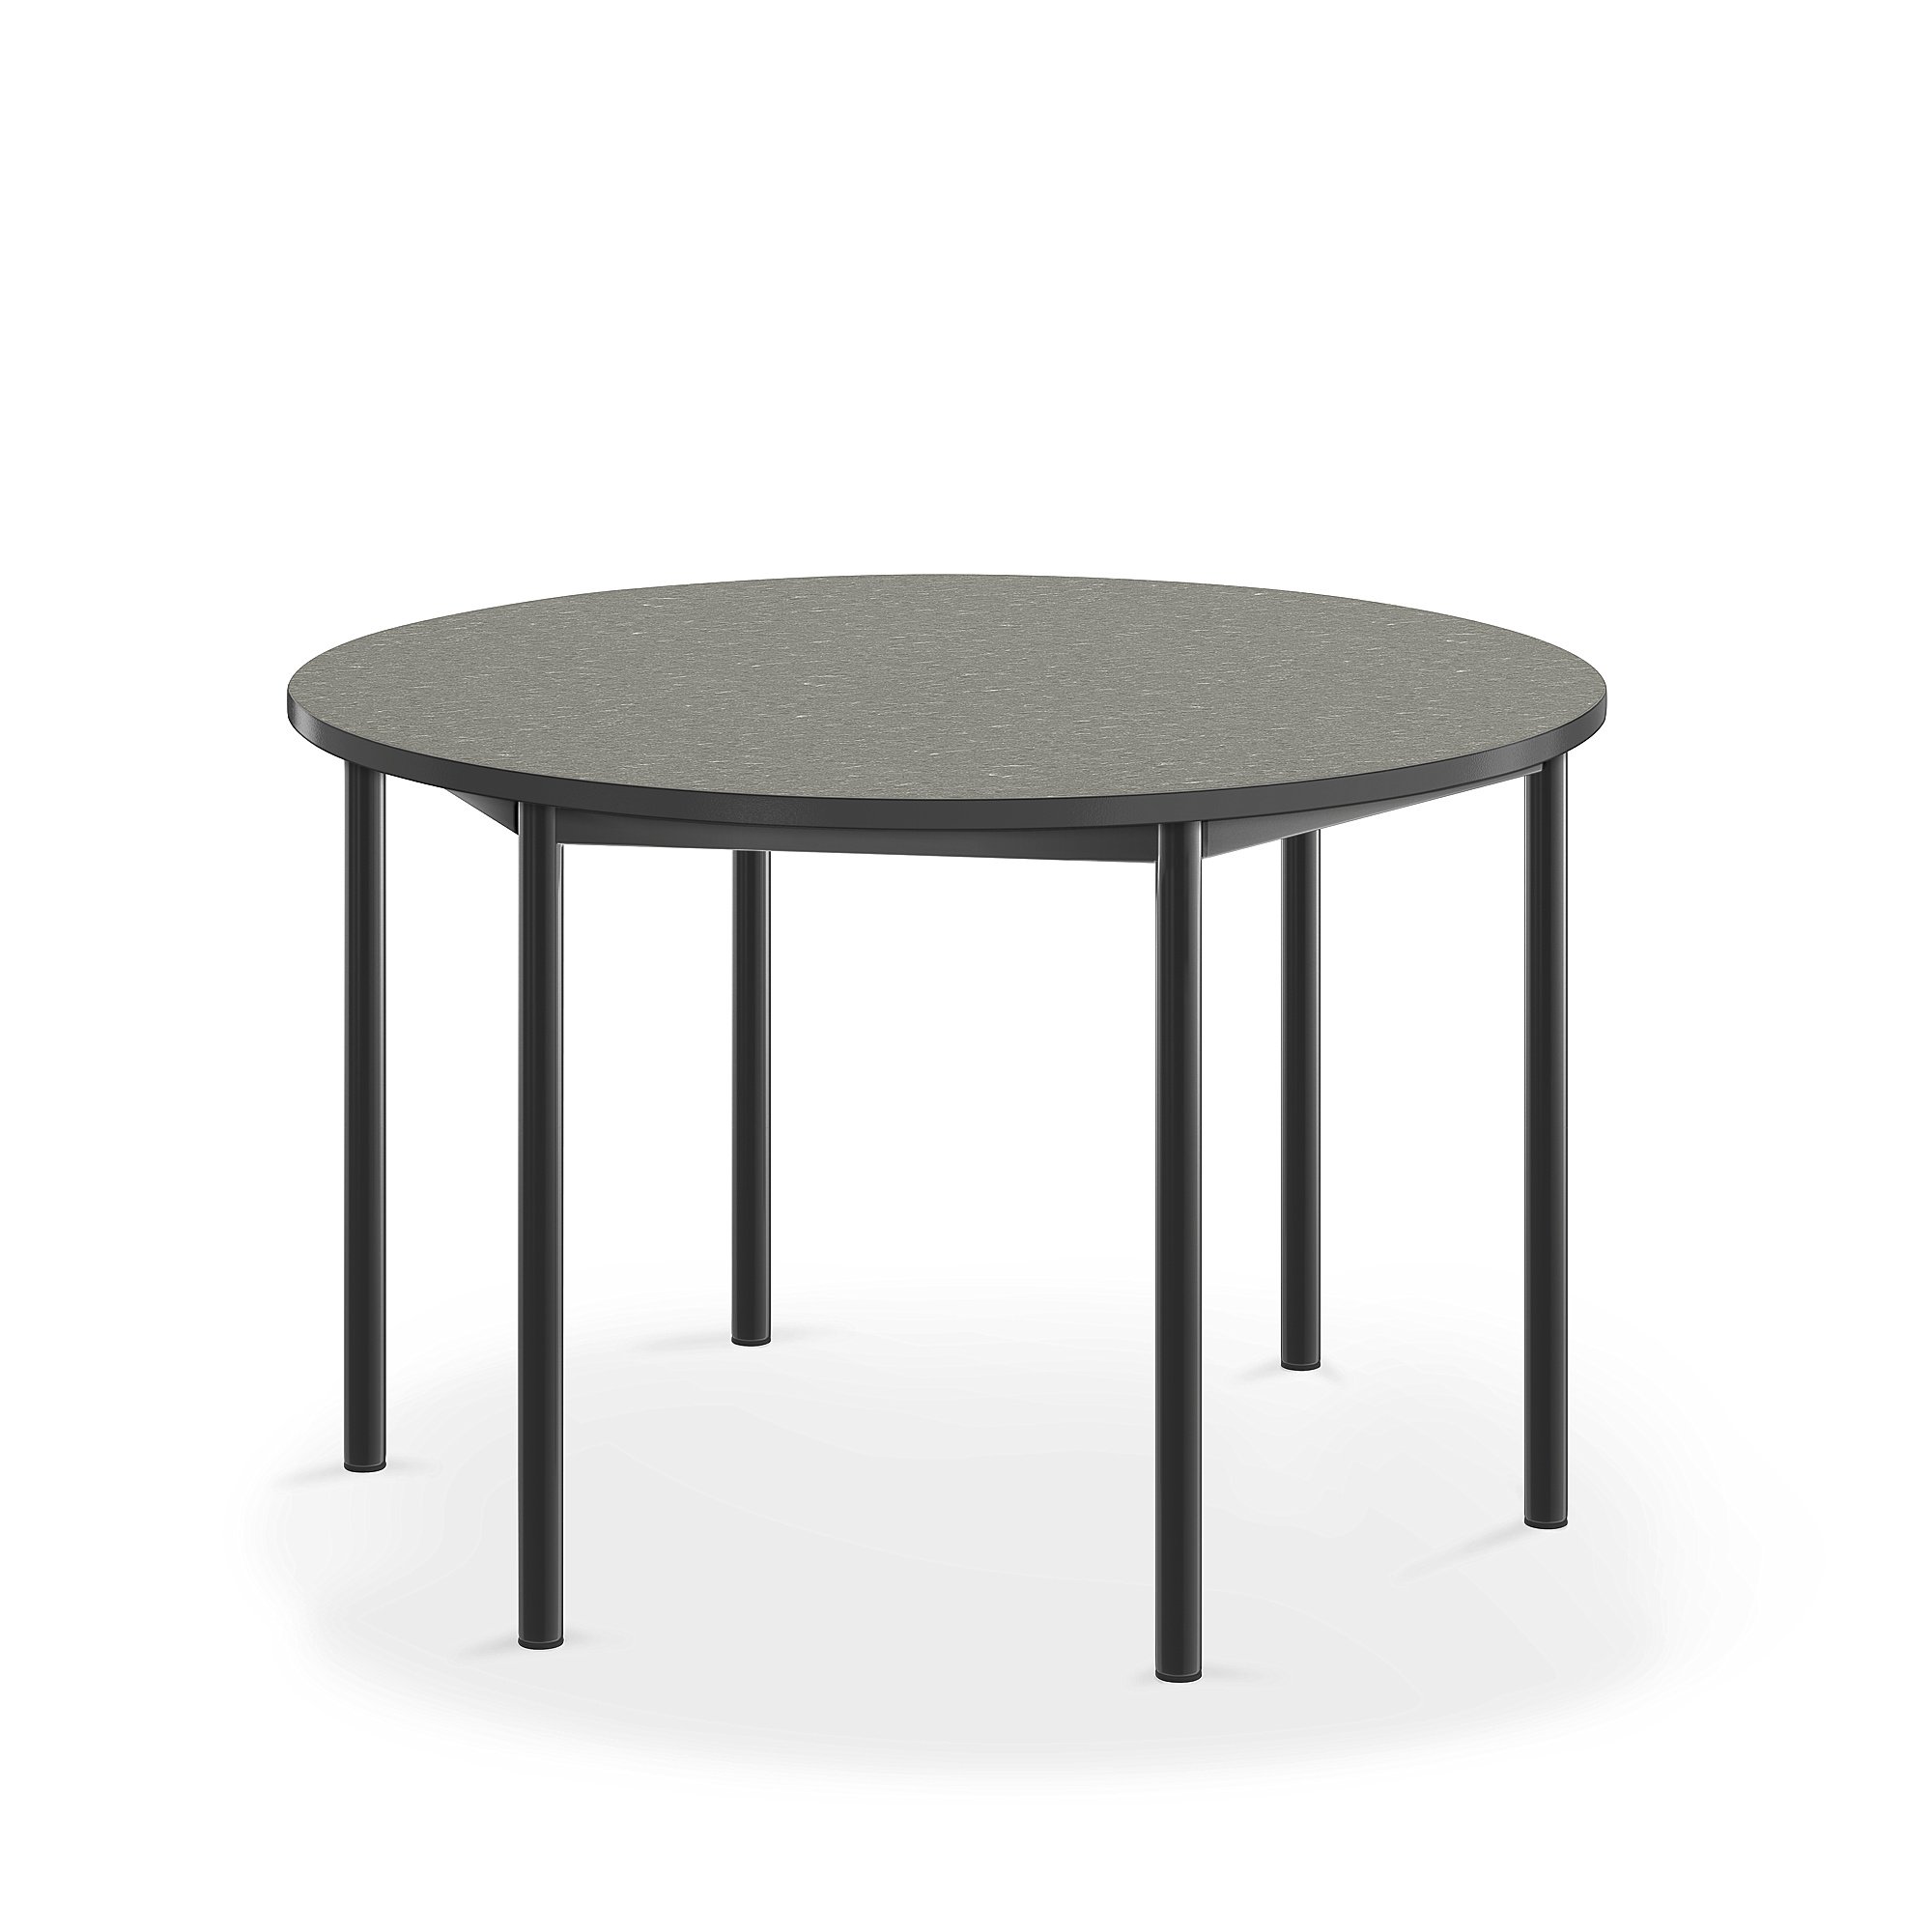 E-shop Stôl SONITUS, kruh, Ø1200x720 mm, linoleum - tmavošedá, antracit